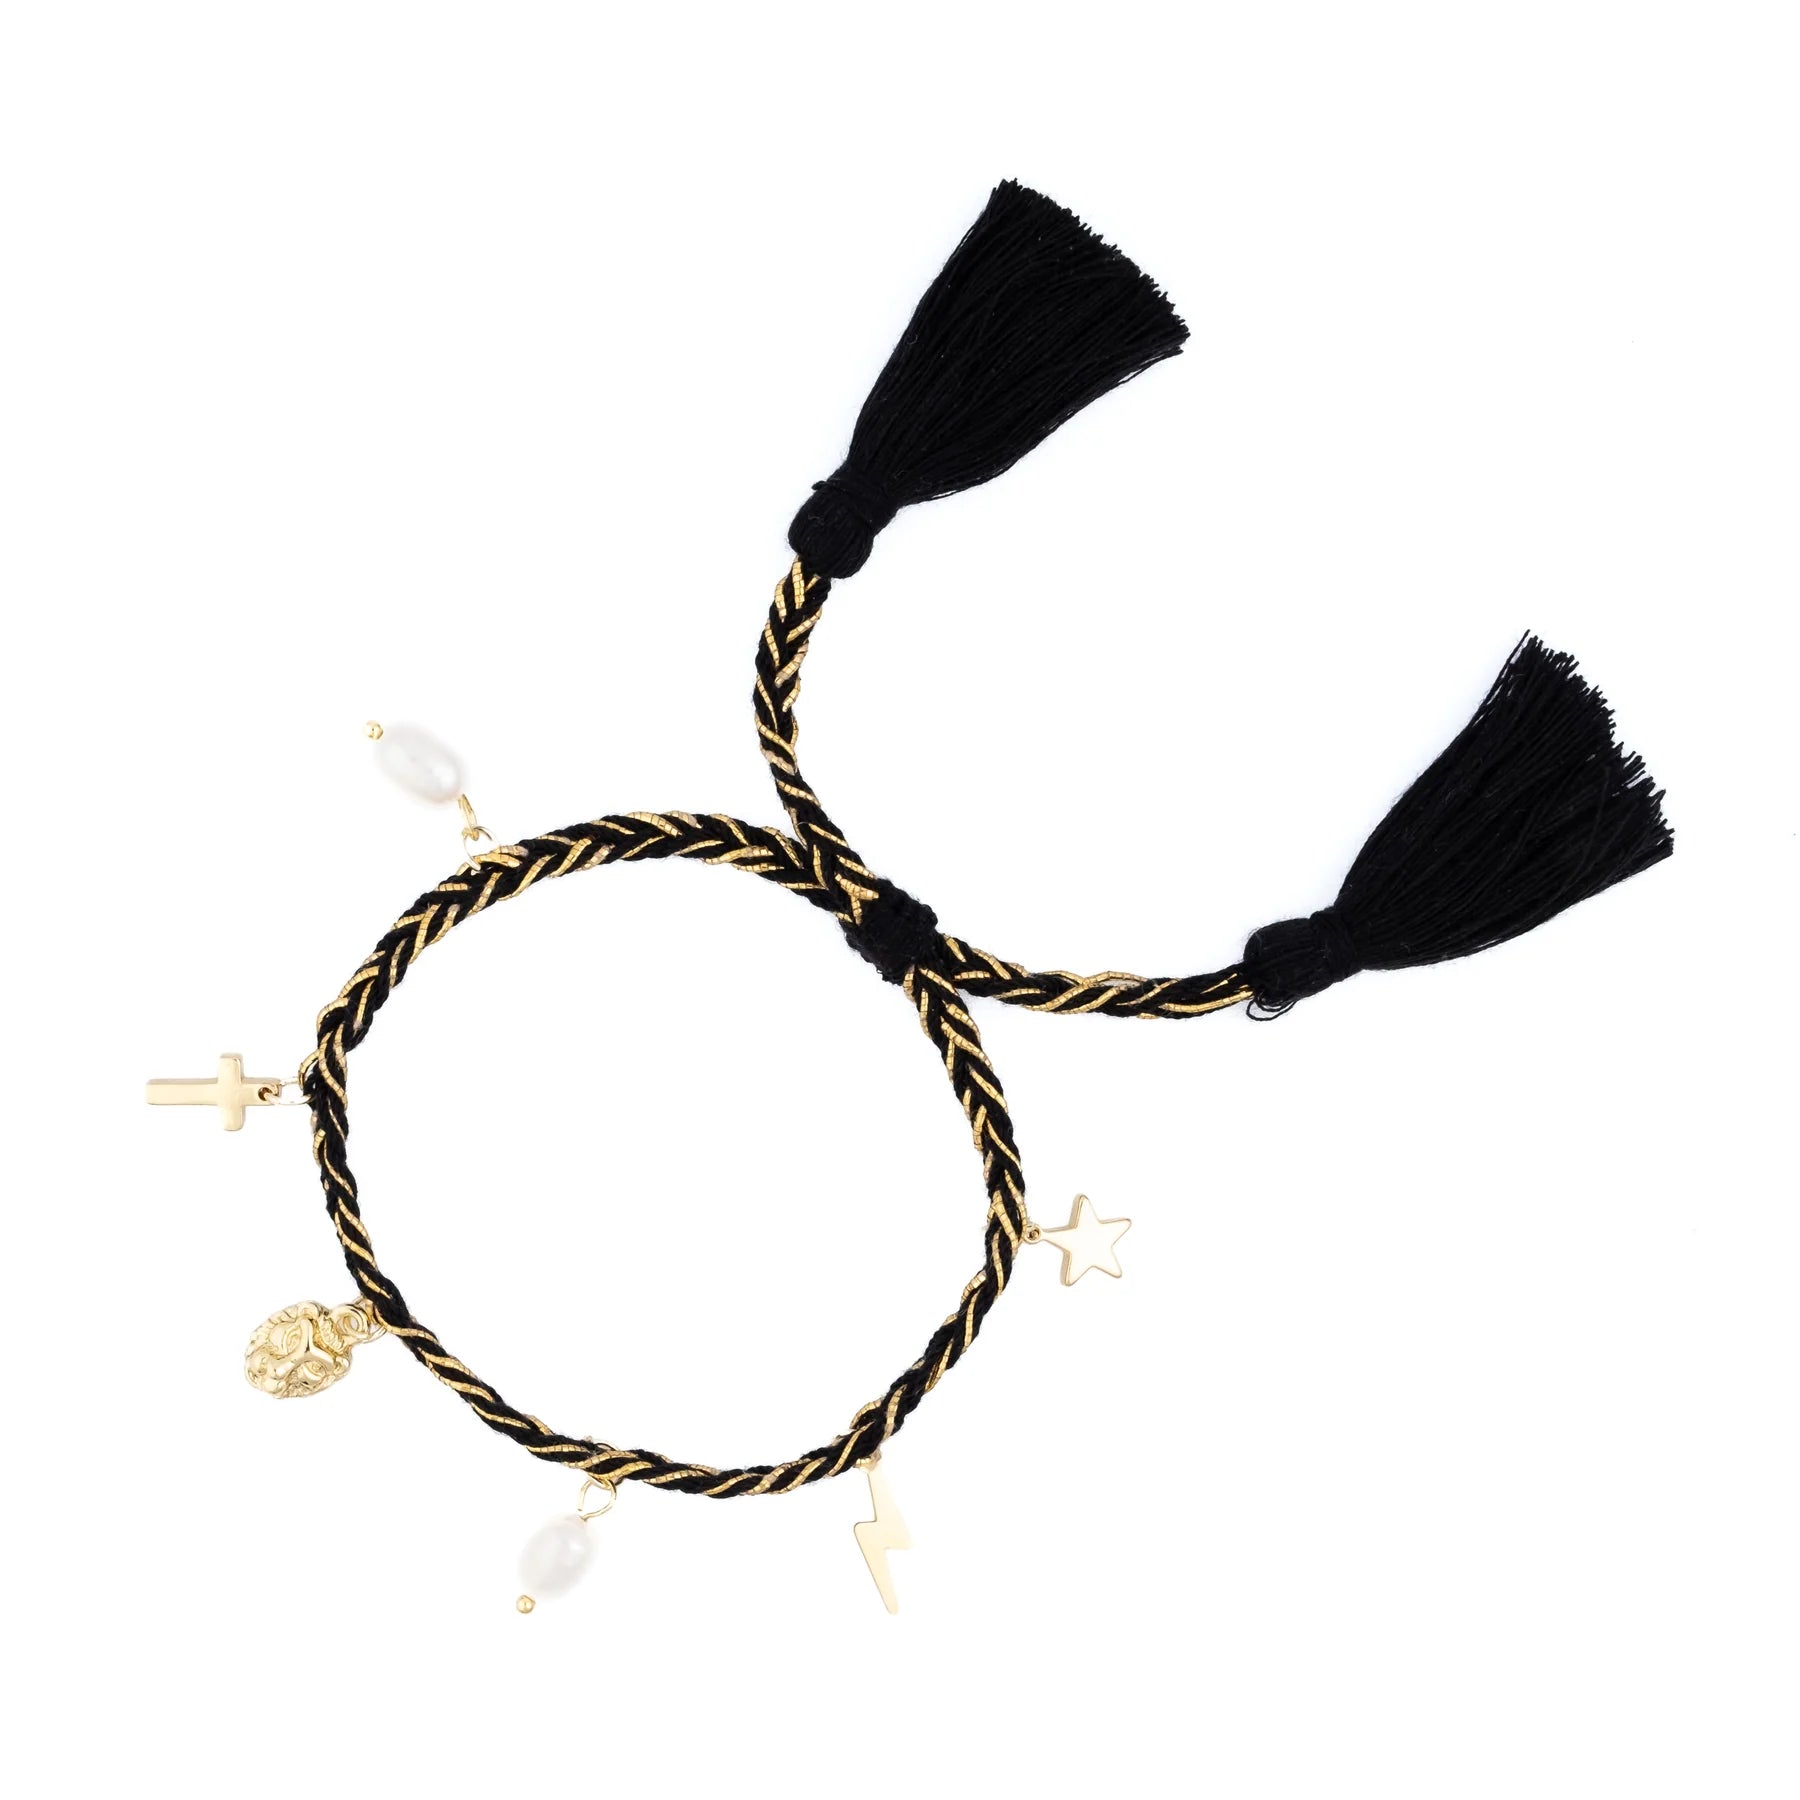 Woven Bracelet w/ Charms Black